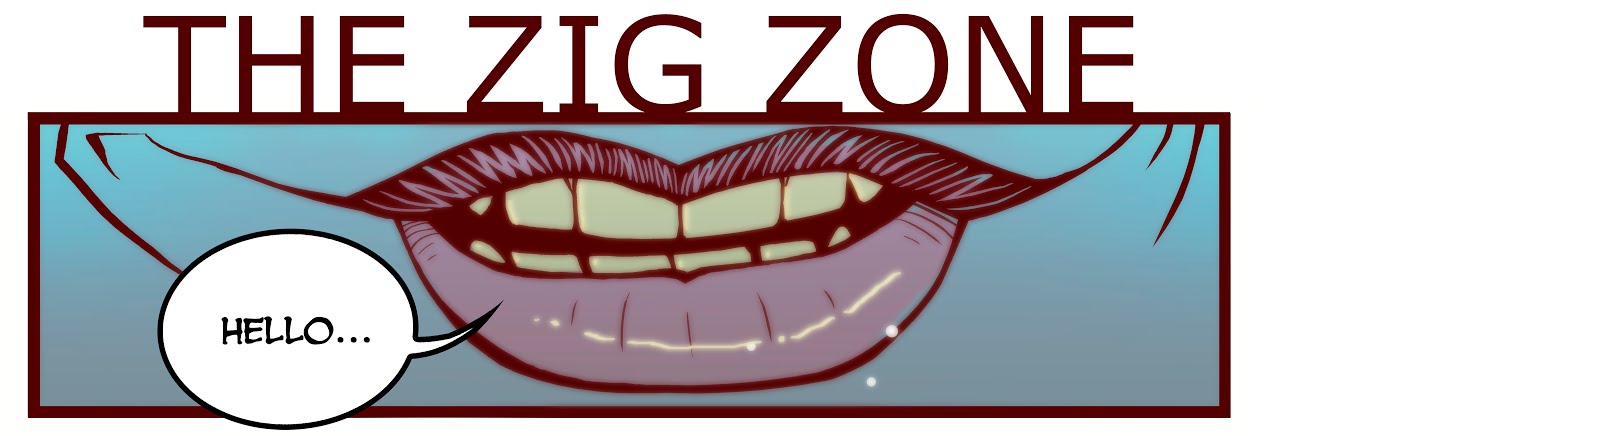 THE ZiG ZONE